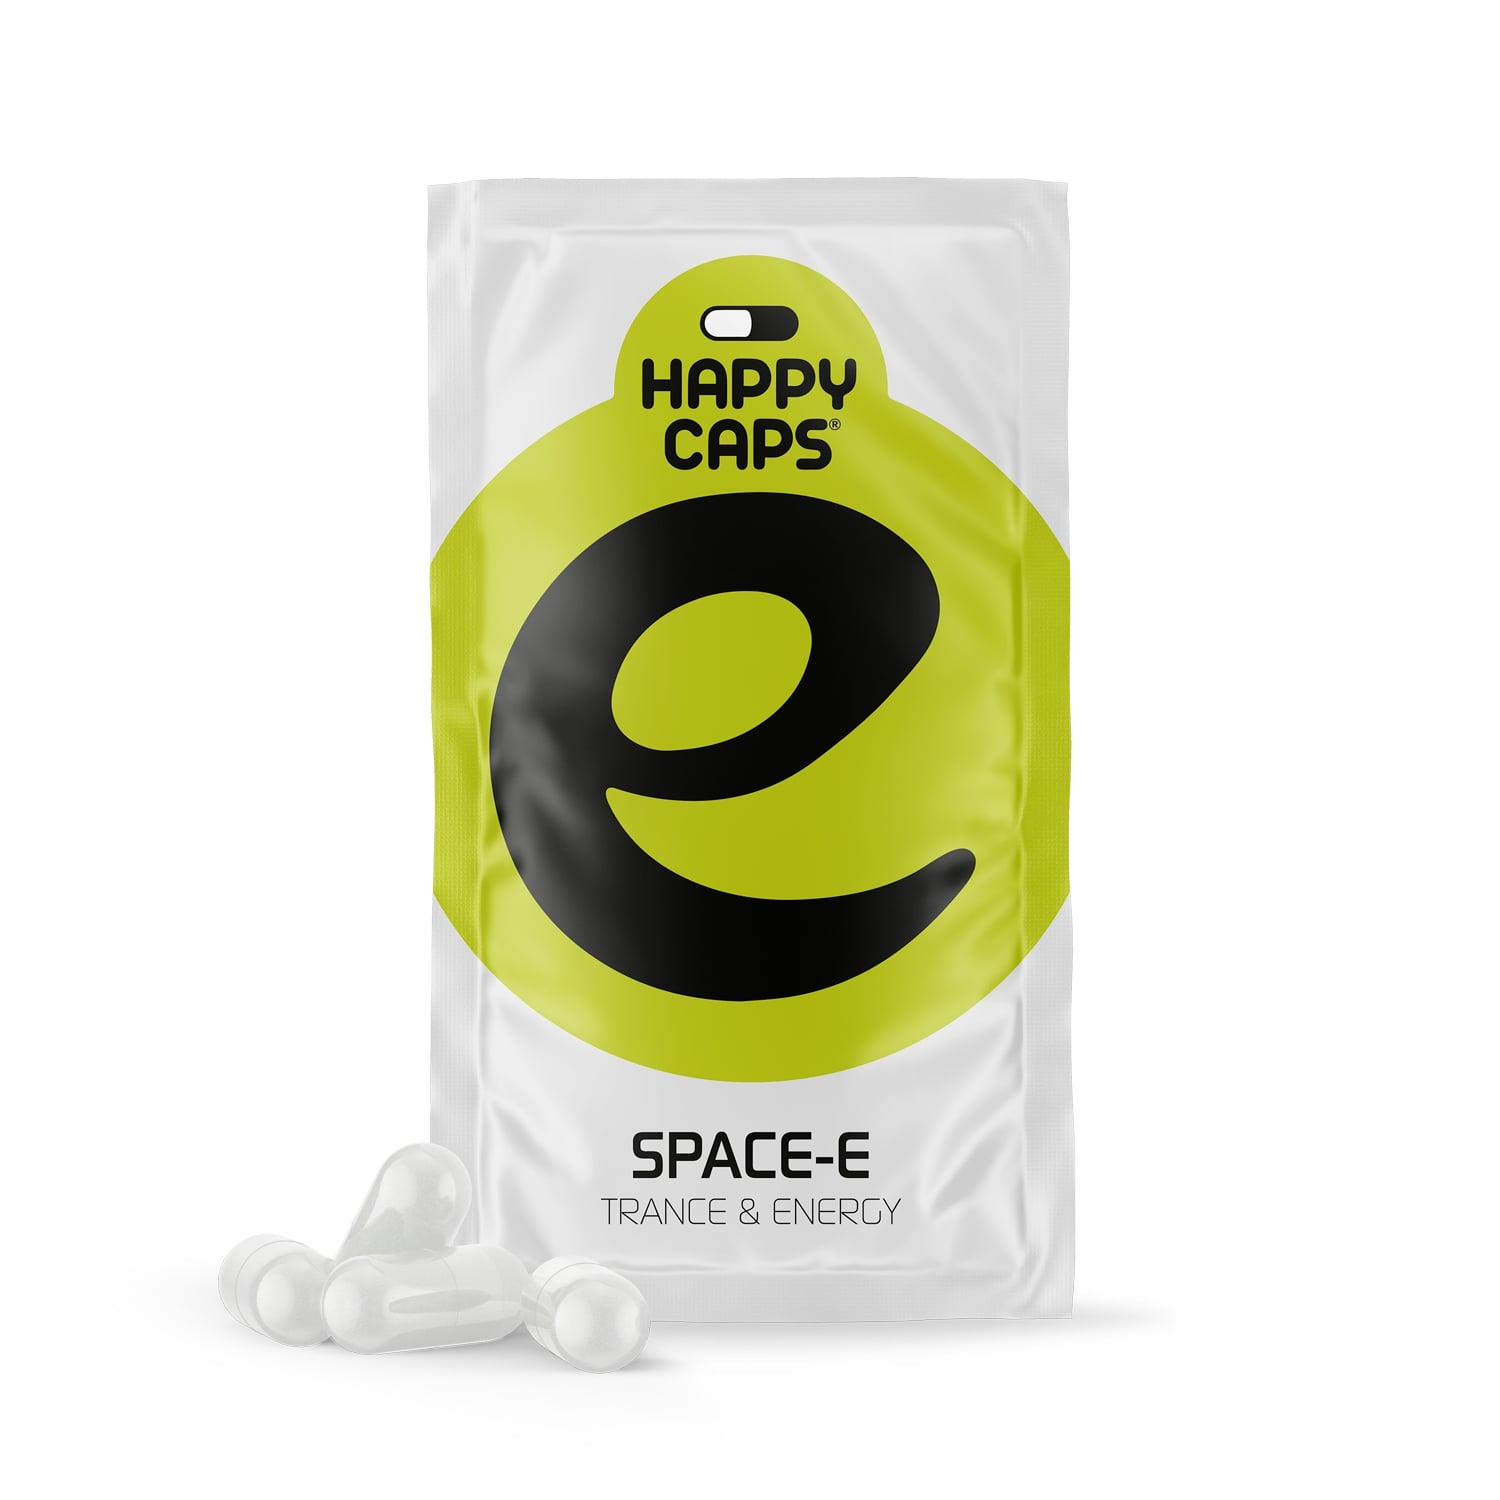 Space-E 4 caps - Happy Caps